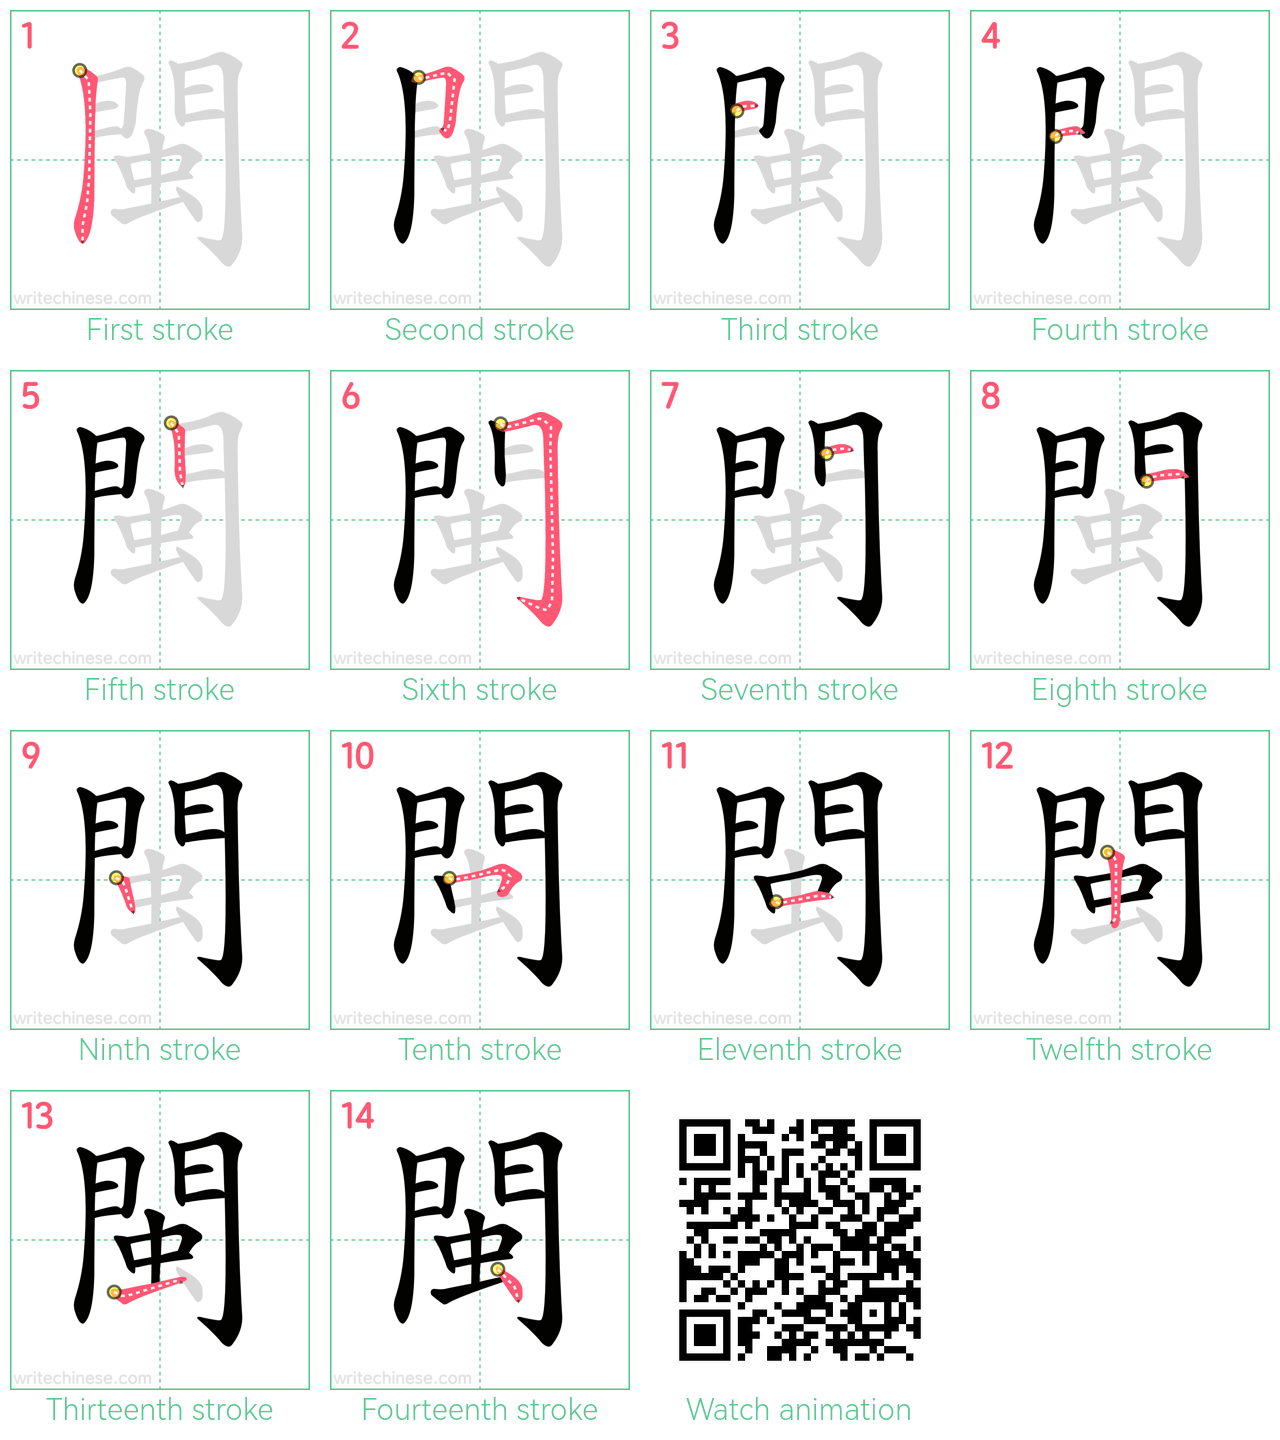 閩 step-by-step stroke order diagrams